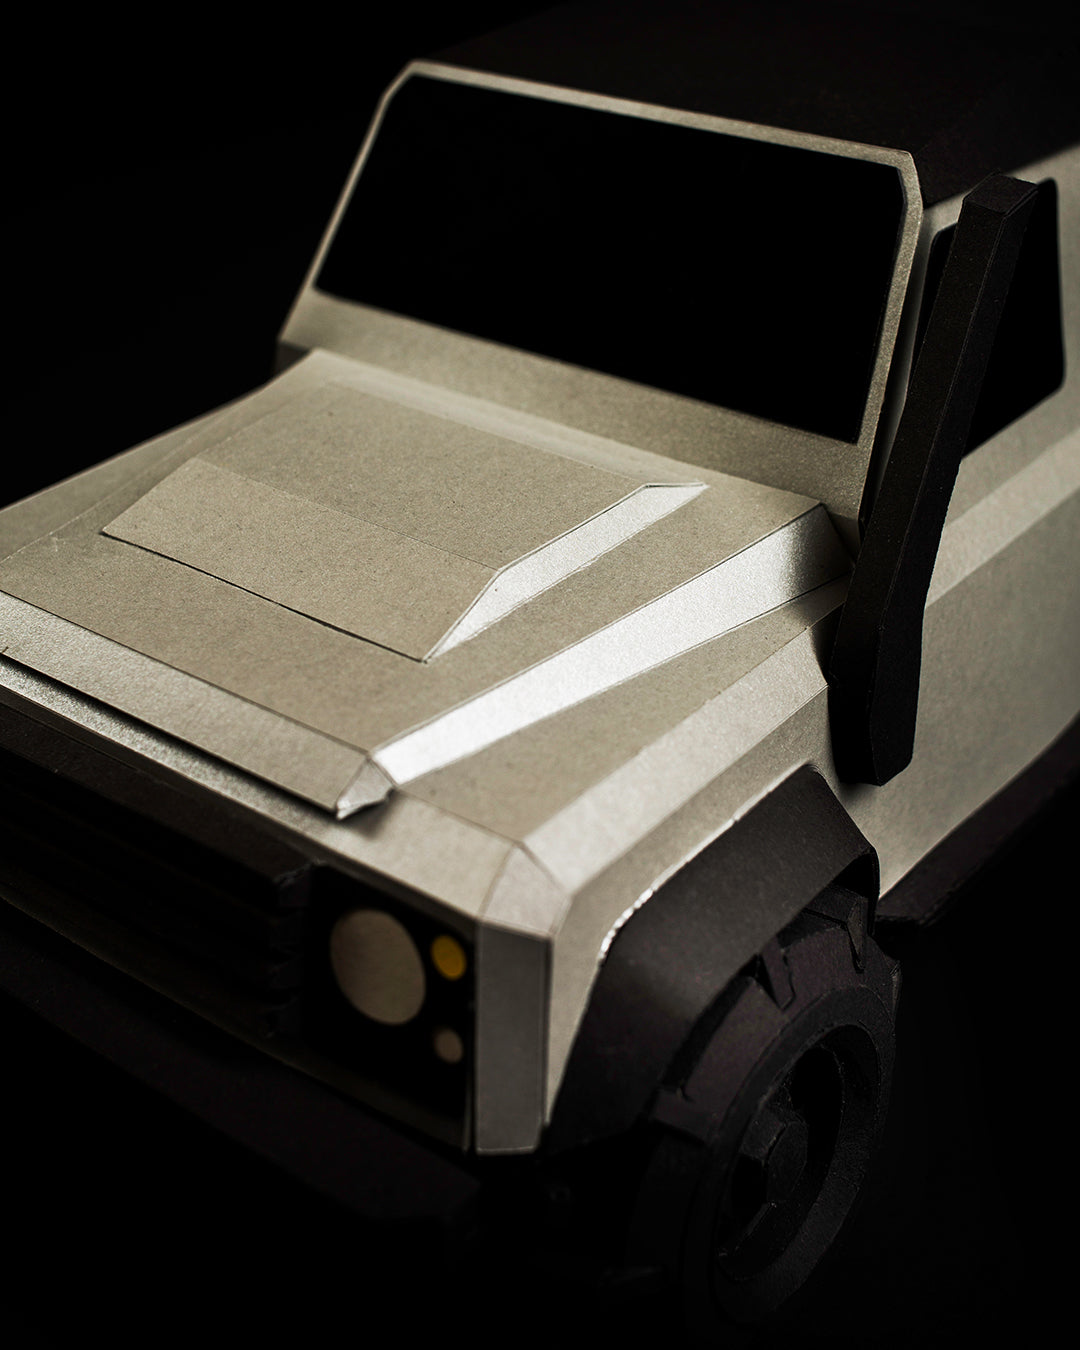  Offroad Papercraft Car Sculpture Kit - Geländewagen Verteidiger - Sleek Silver